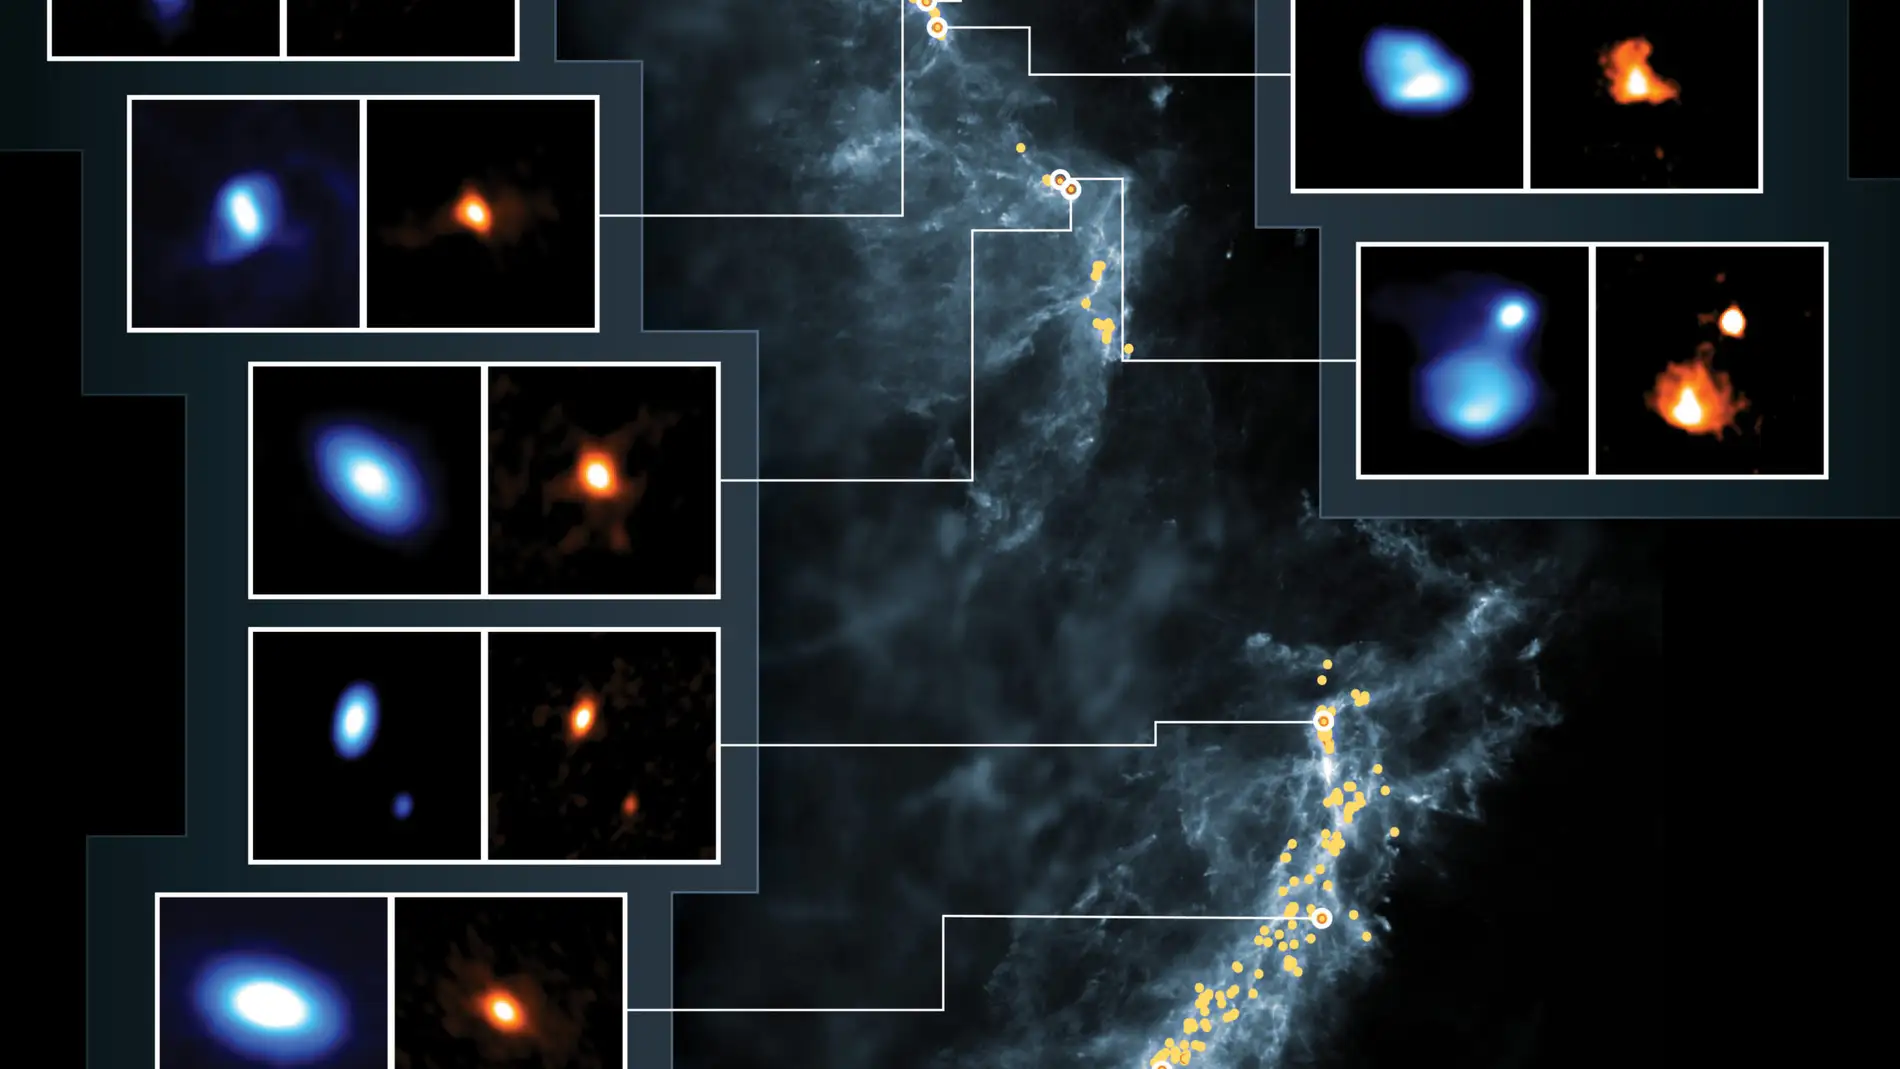 Mas de 300 discos protoplanetarios en las jovenes estrellas de Orion